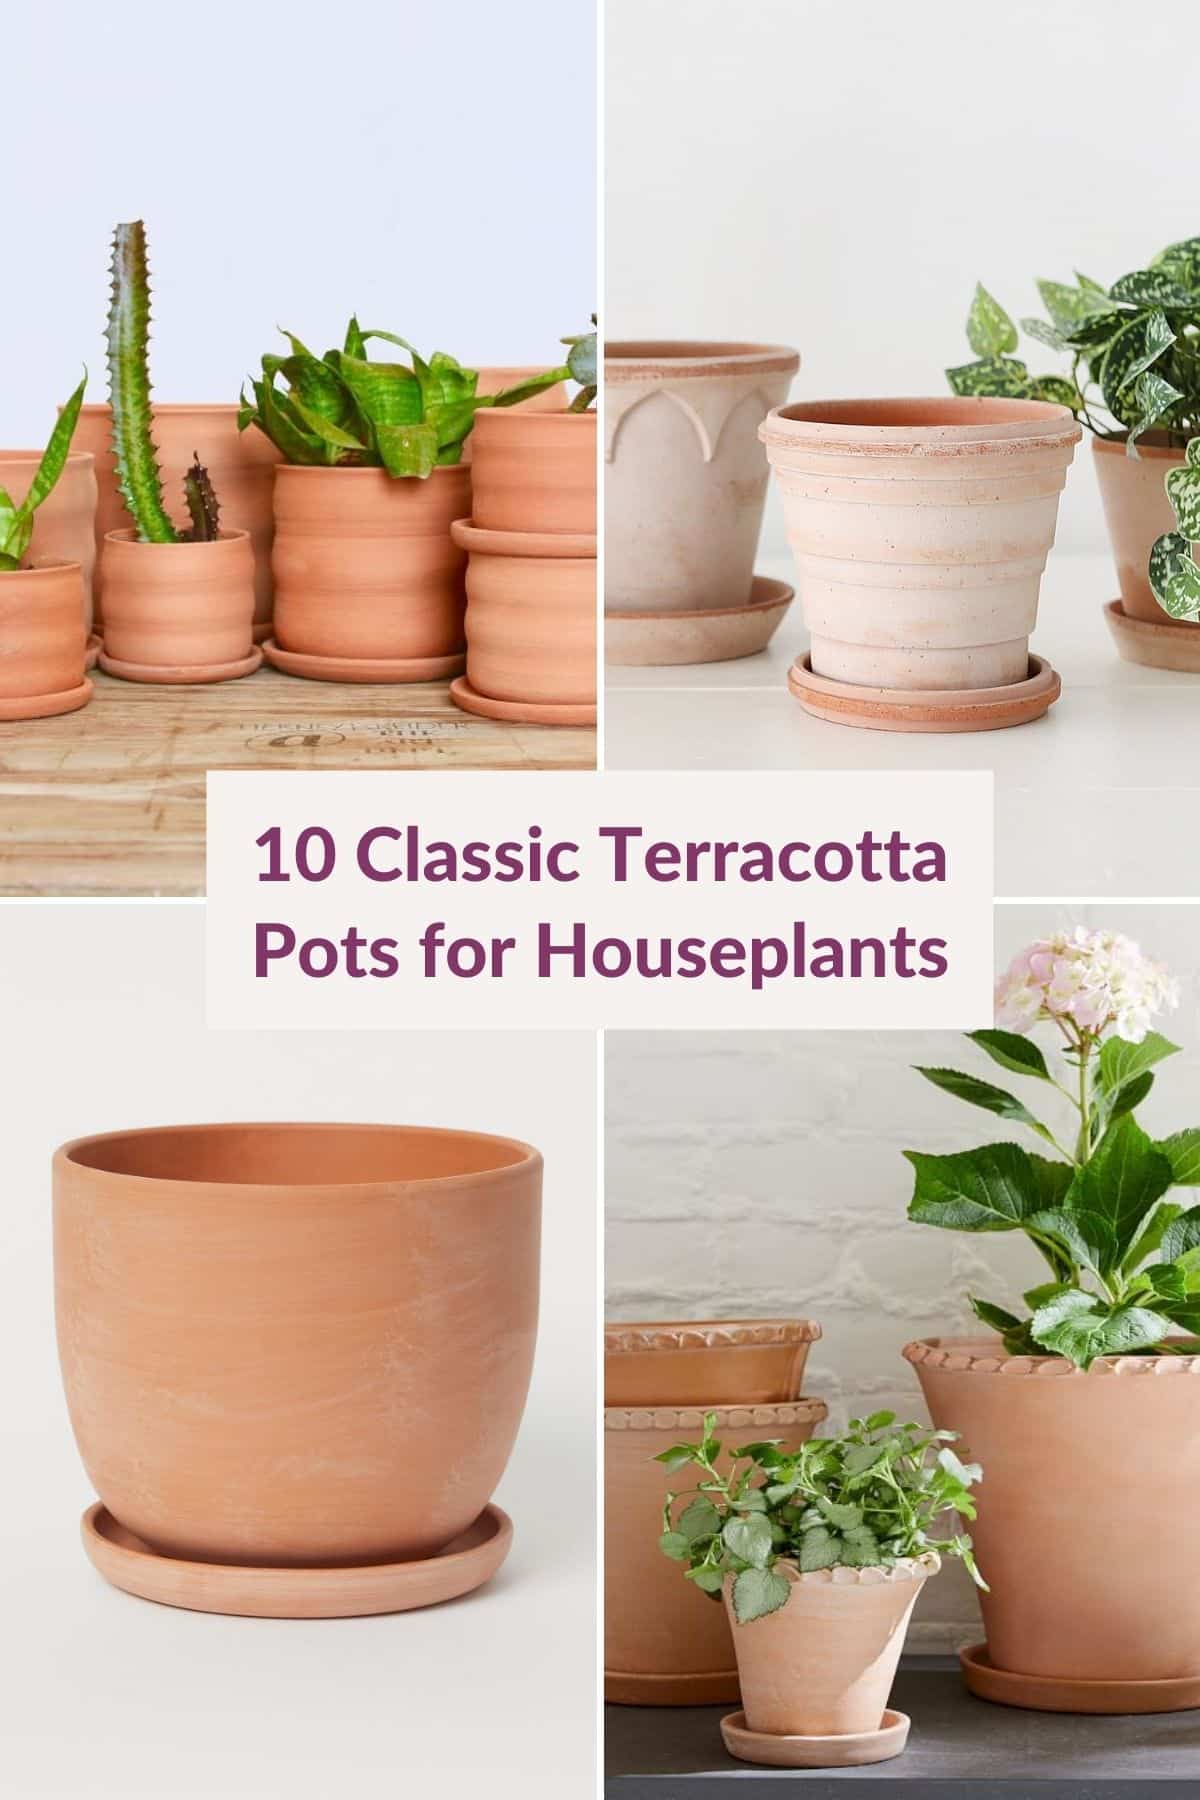  Танд таалагдах тасалгааны ургамалд зориулсан 13 сонгодог Terracotta сав